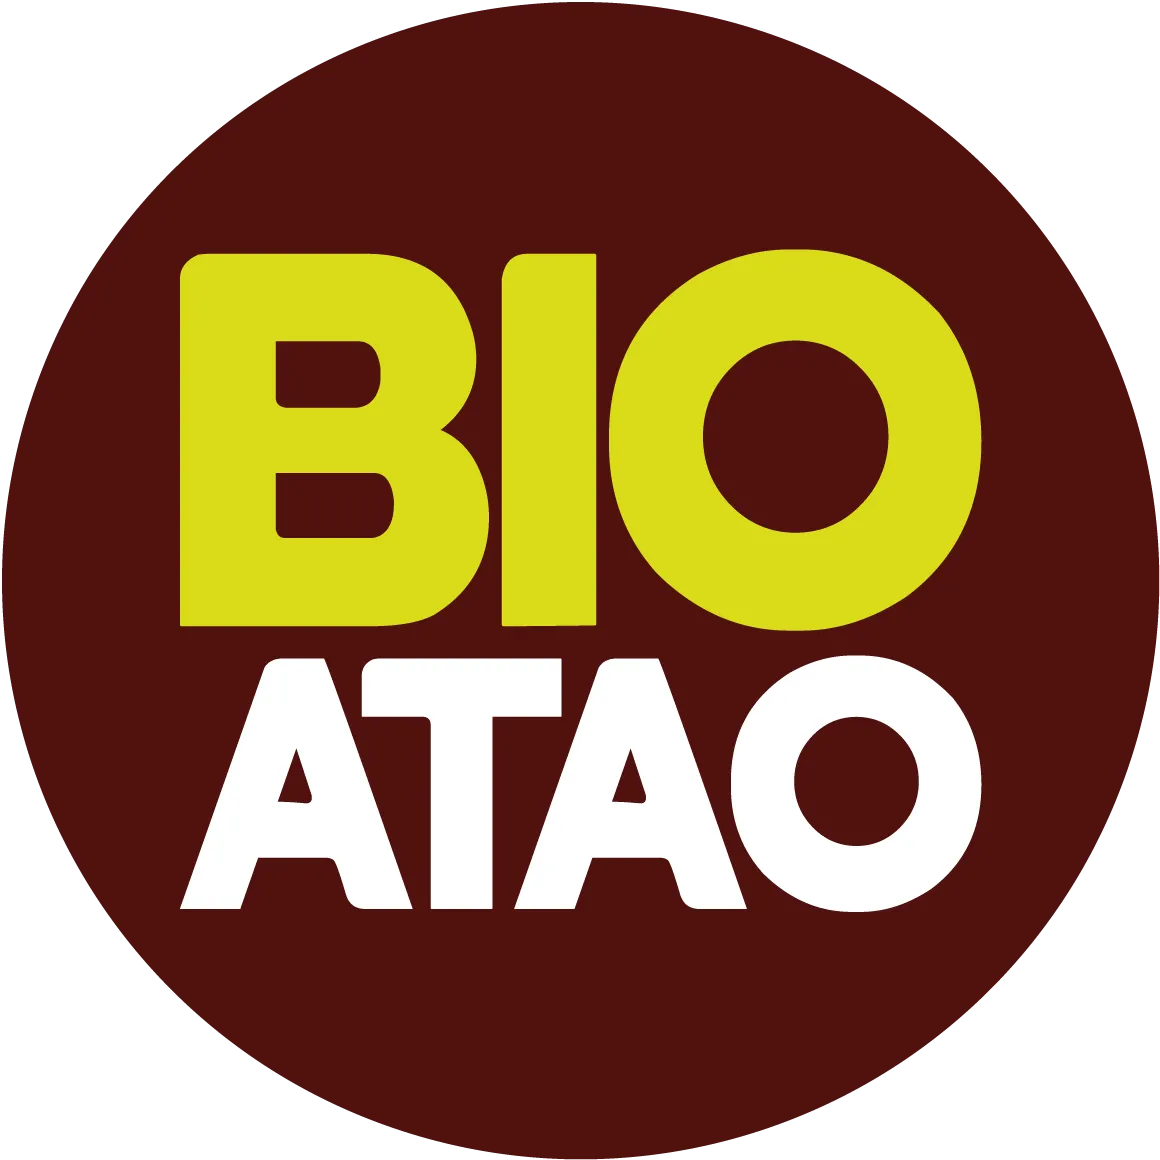 Bio Atao Logo